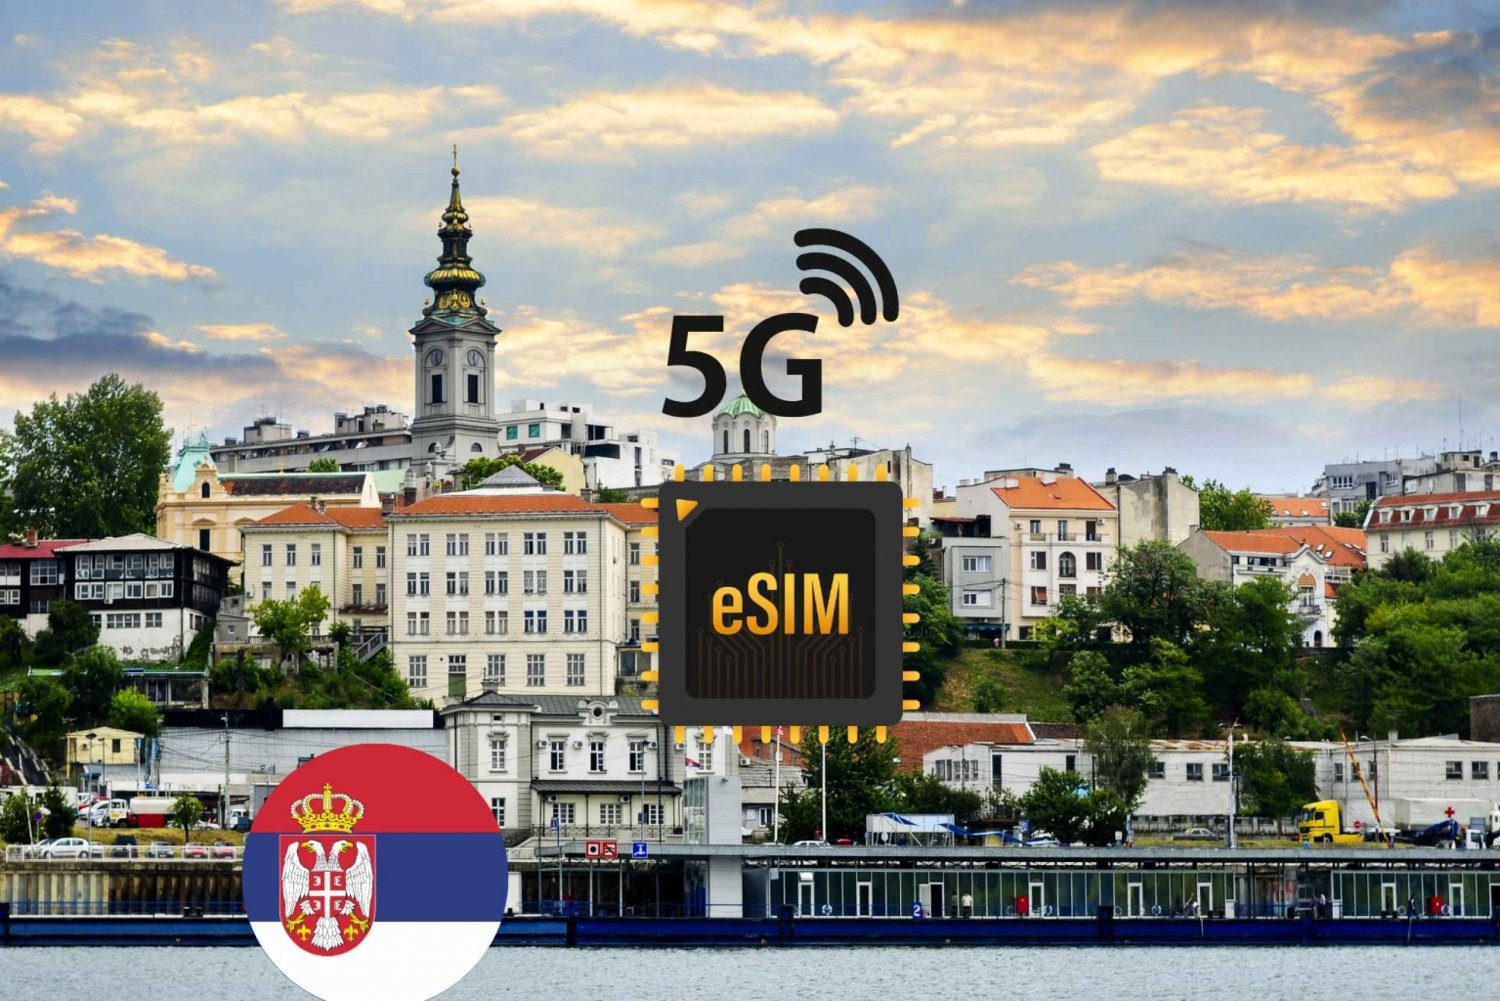 Beograd : eSIM Internett-dataplan Serbia høyhastighets 5G